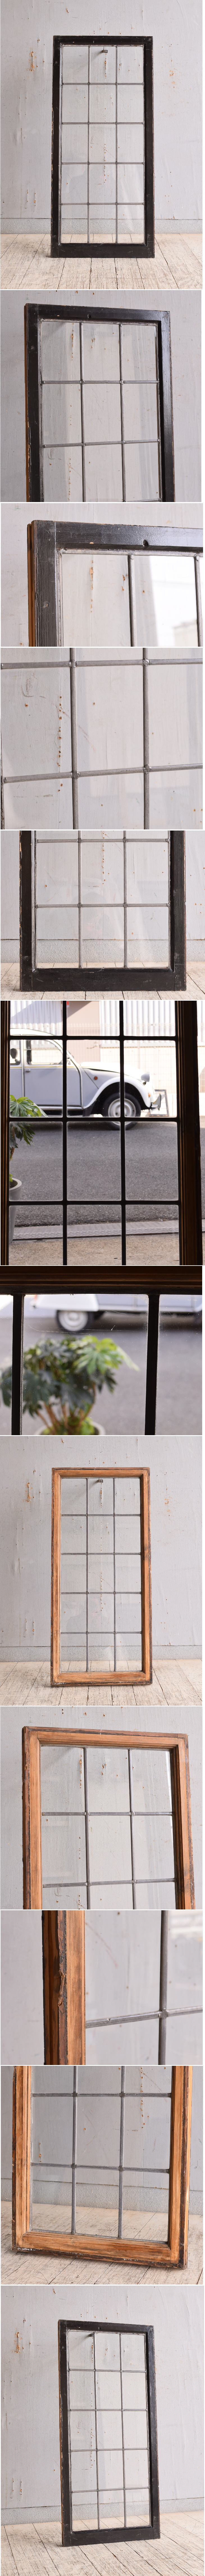 イギリス アンティーク 窓 無色透明 9862